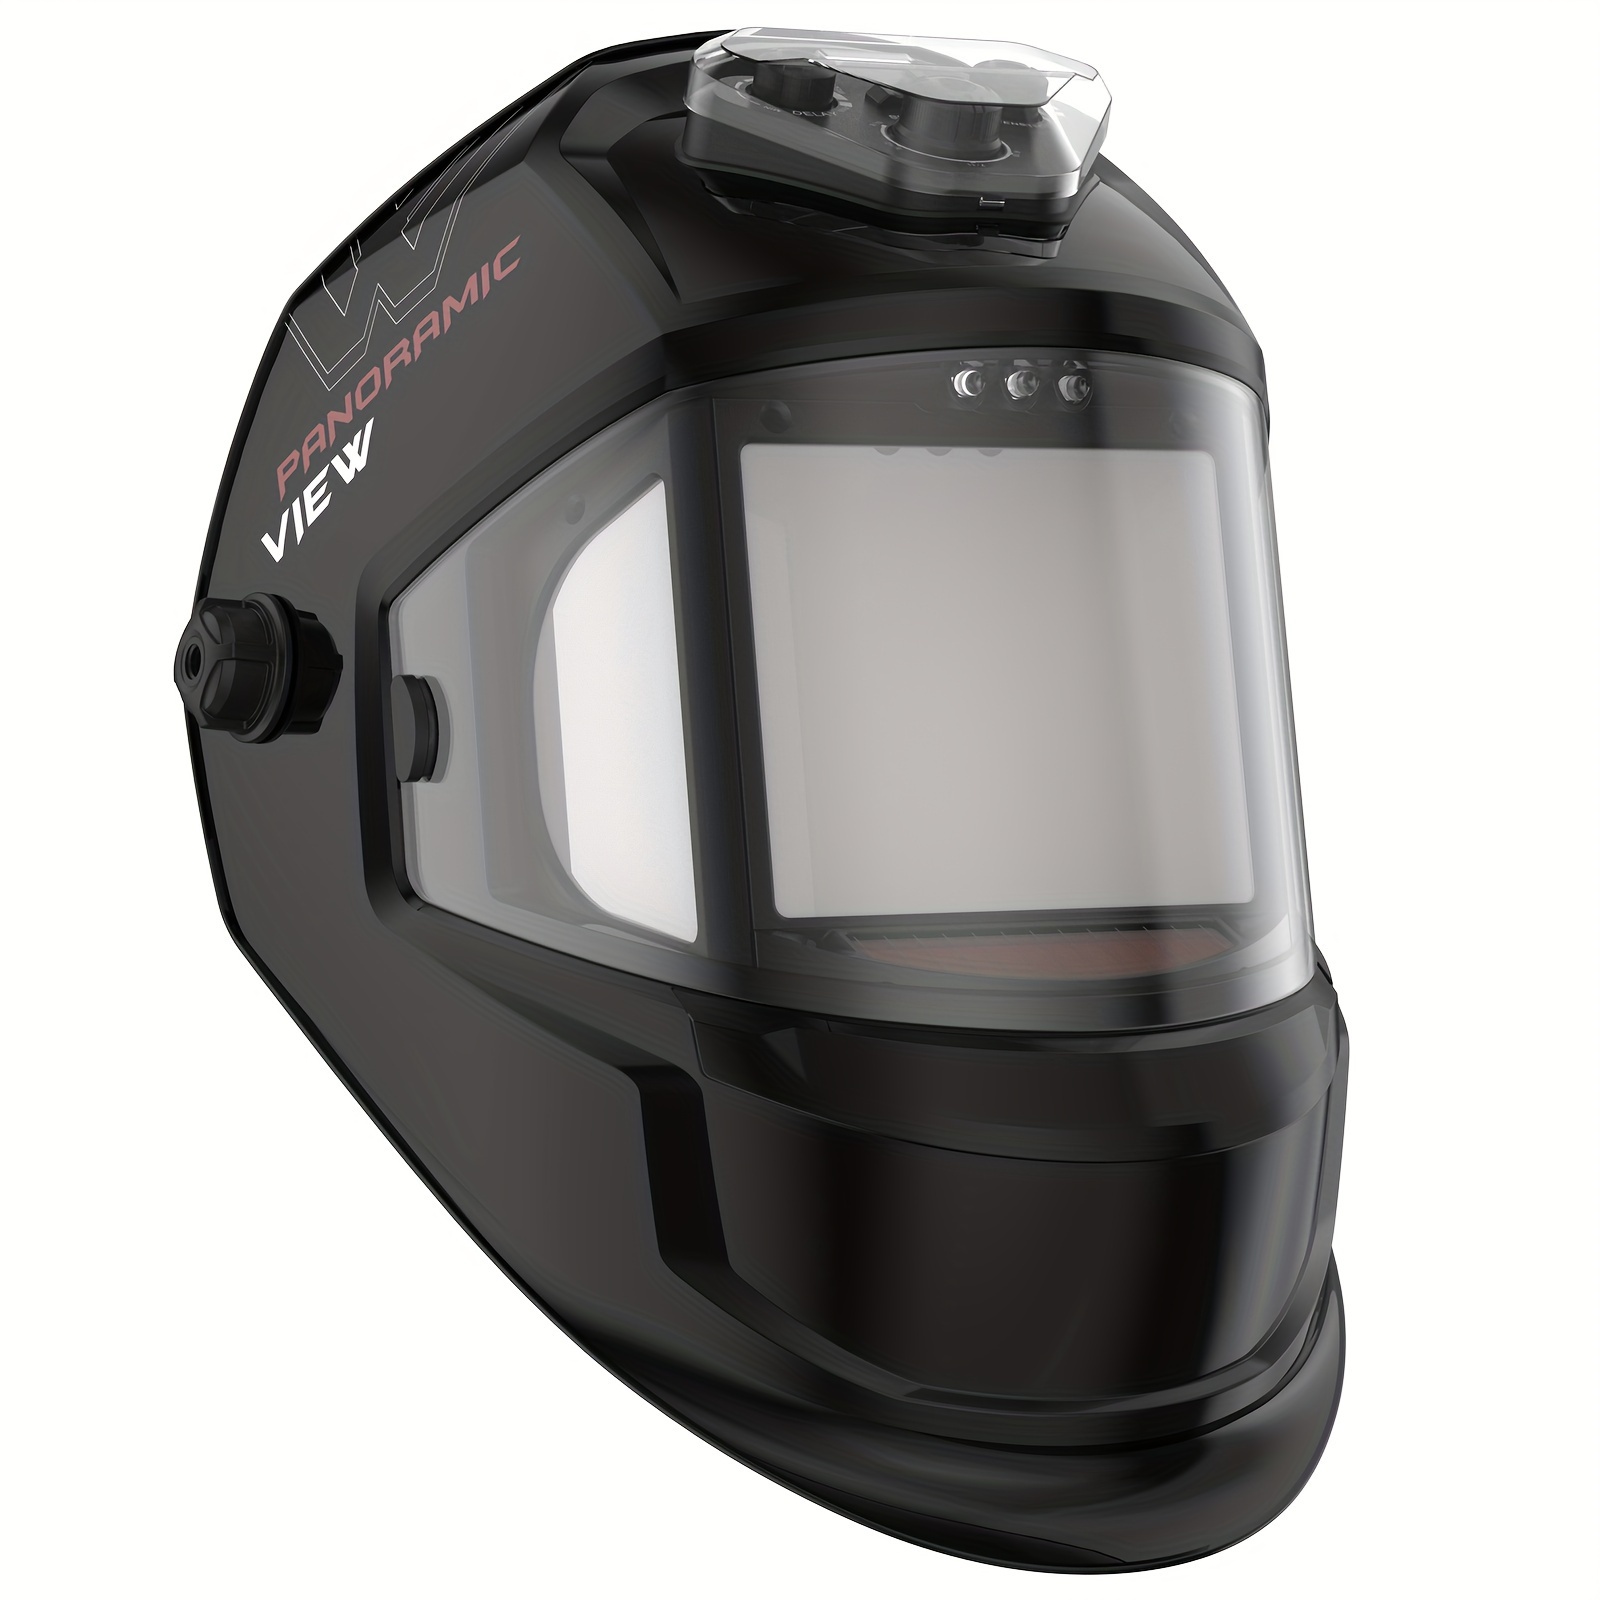 

Yeswelder Panoramic View Auto Darkening Welding Helmet, Large Viewing True Color 6 Arc Sensor Welder Mask